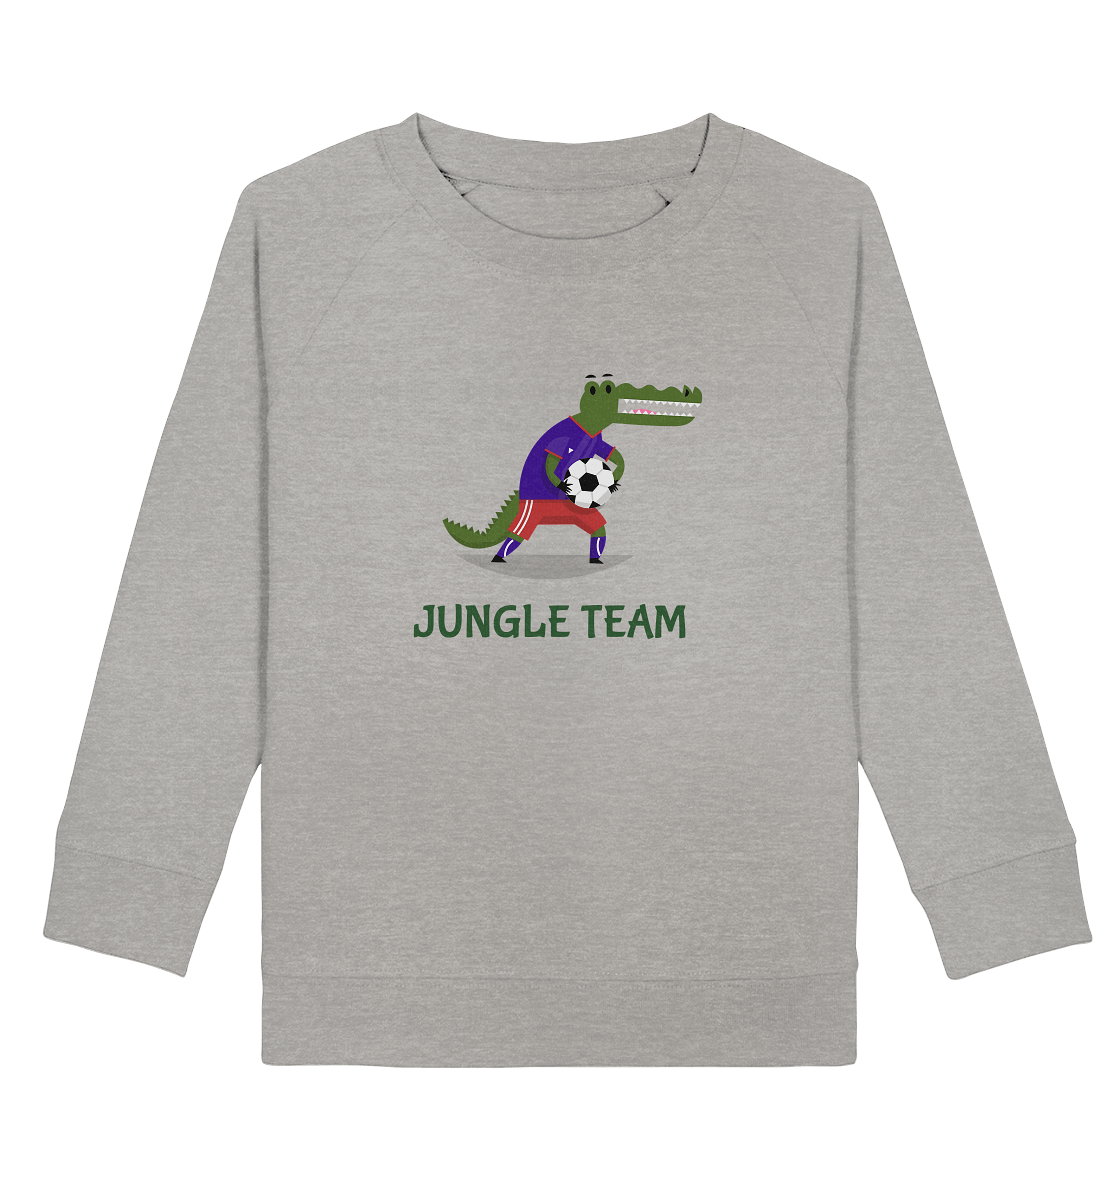 Kinder Sweatshirt in grau mit modischen Fußballspieler Krokodile Print und Beschriftung "Jungle Team". 